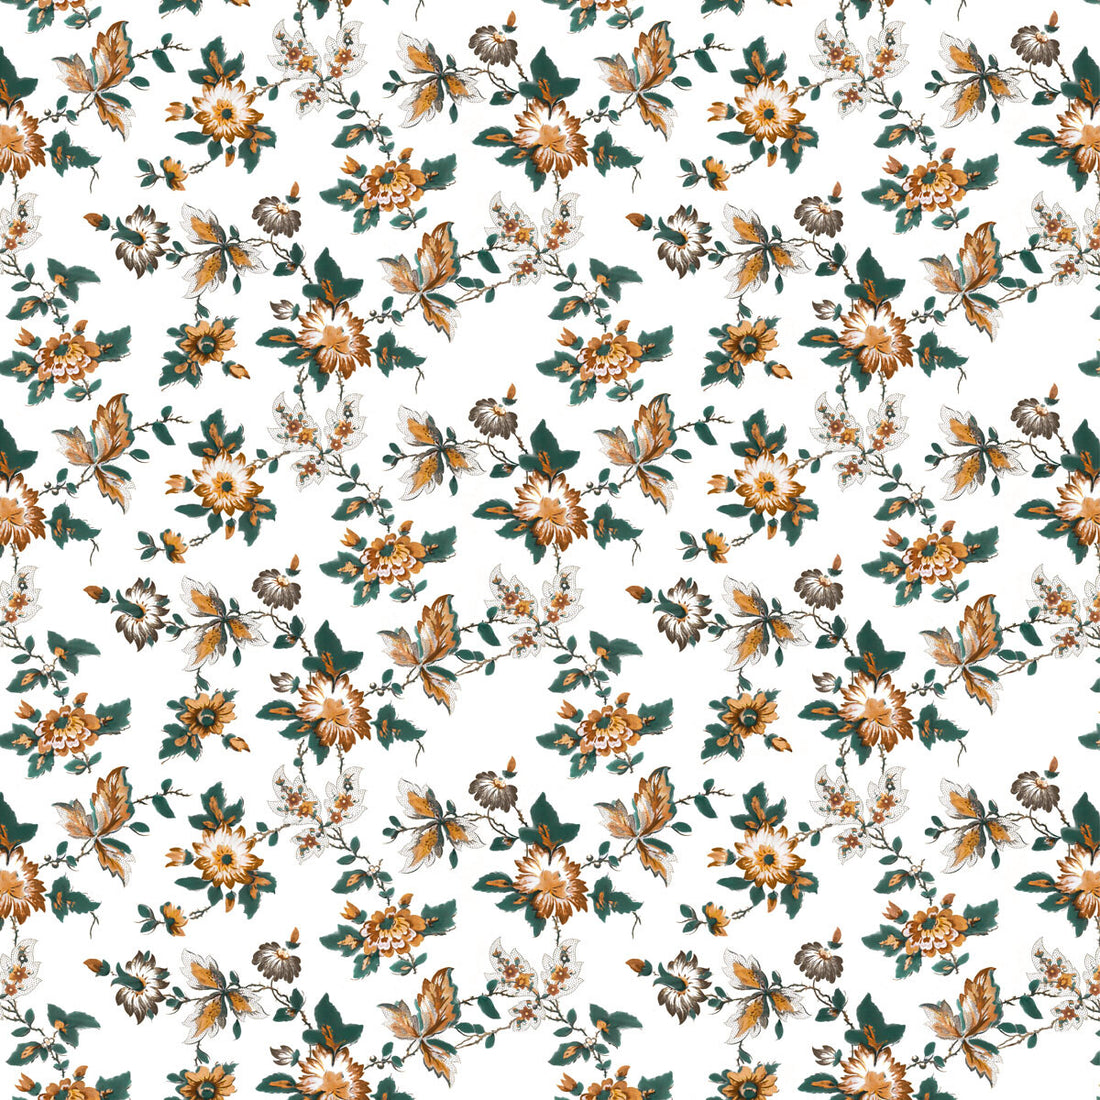 Brigitta fabric in ocre color - pattern LCT1070.002.0 - by Gaston y Daniela in the Lorenzo Castillo VI collection